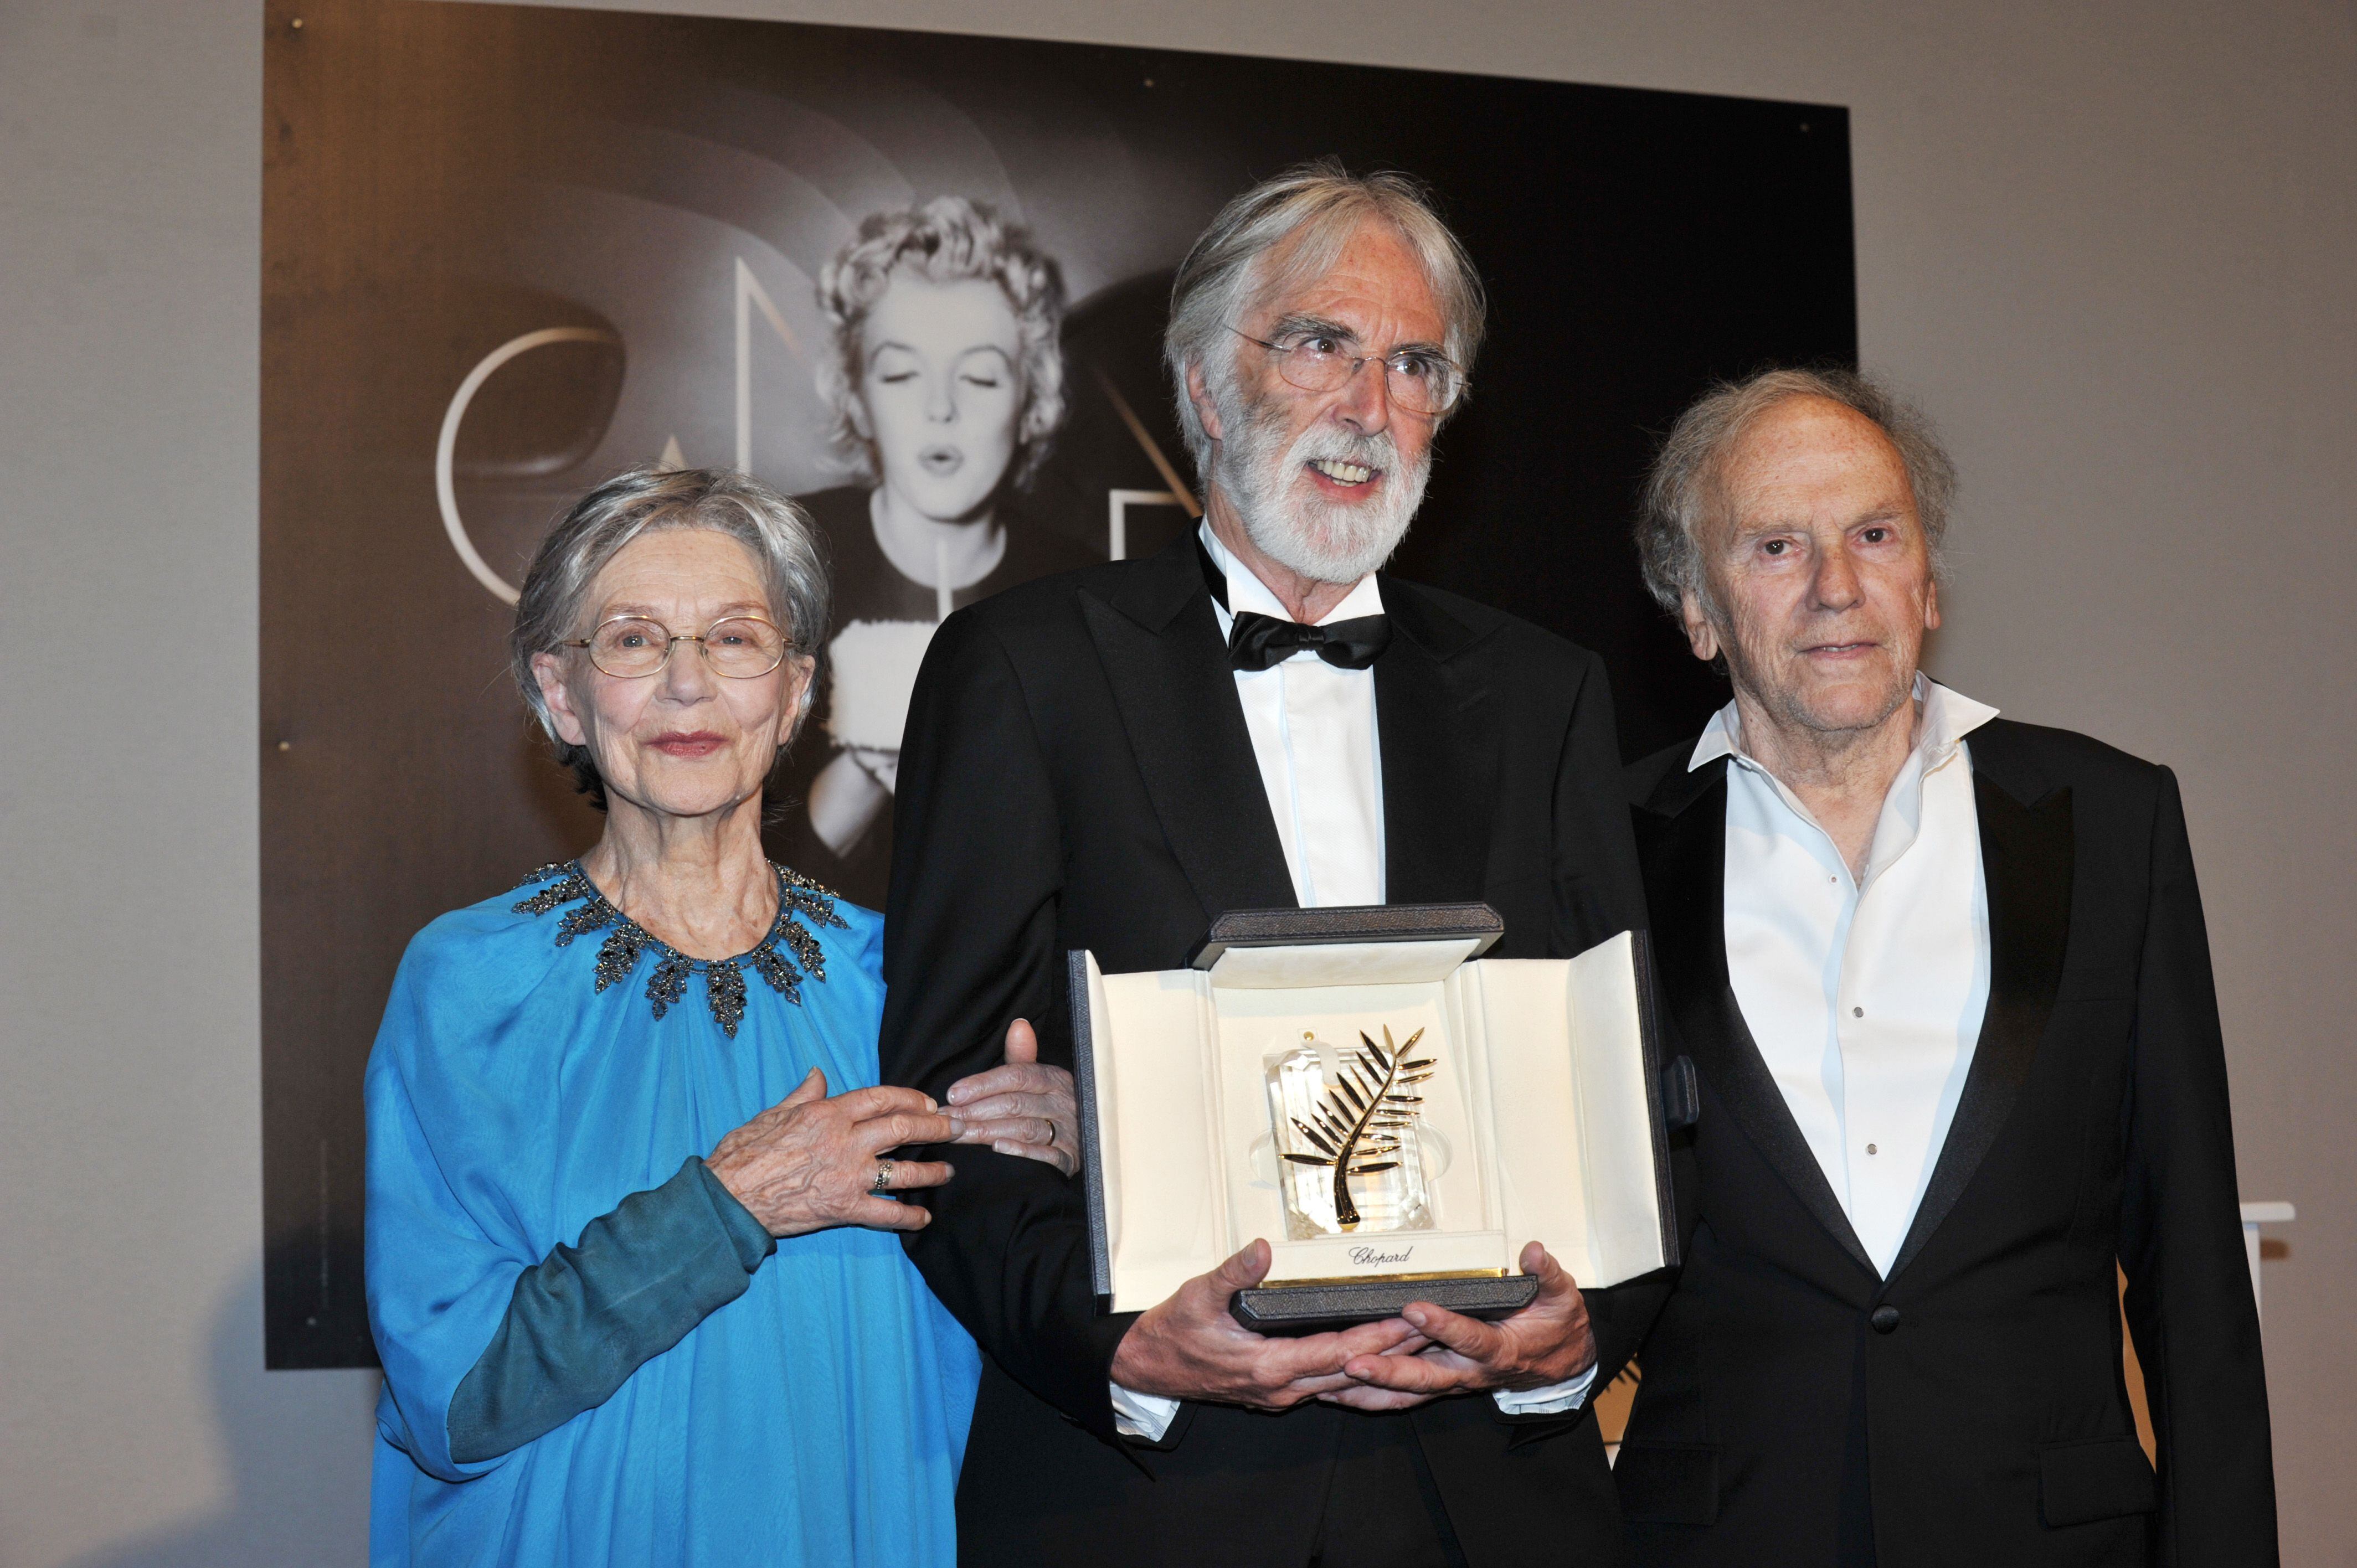 Los ganadores de la Palma de Oro por 'Amour', Emmanuelle Riva, Michael Haneke y Jean-Louis Trintignant, posan durante el 65º festival de Cannes.